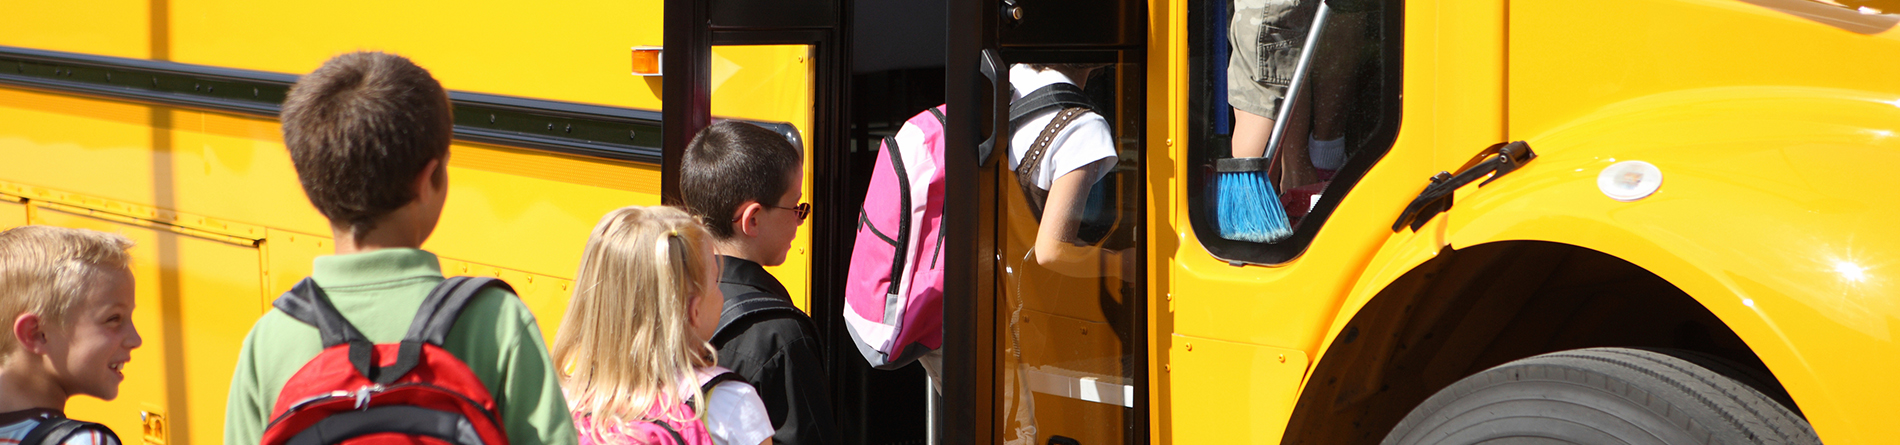 estudiantes subiendo al autobús